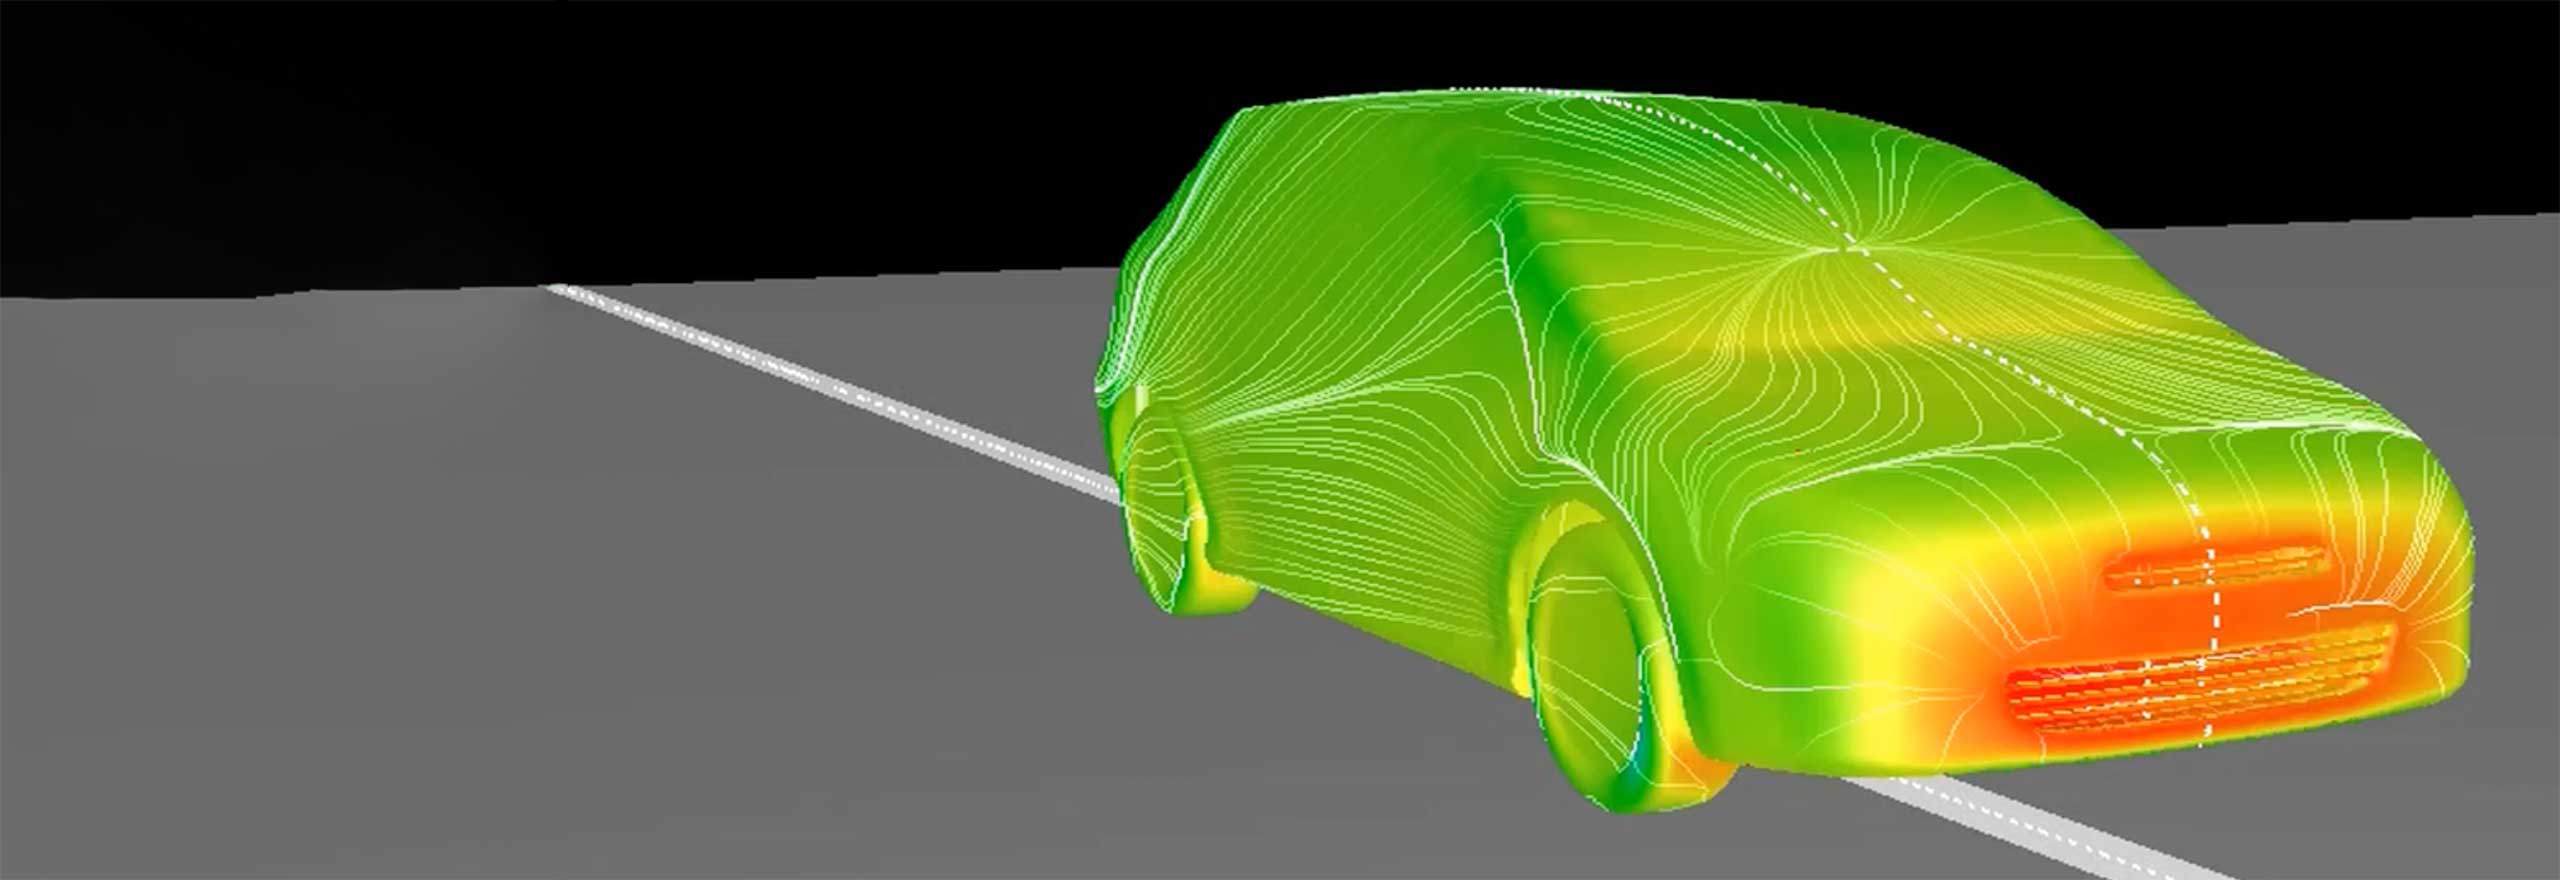 Co-simulação multifísica mostrando a previsão Adams-scFLOW do movimento dinâmico da suspensão do veículo com um vento forte